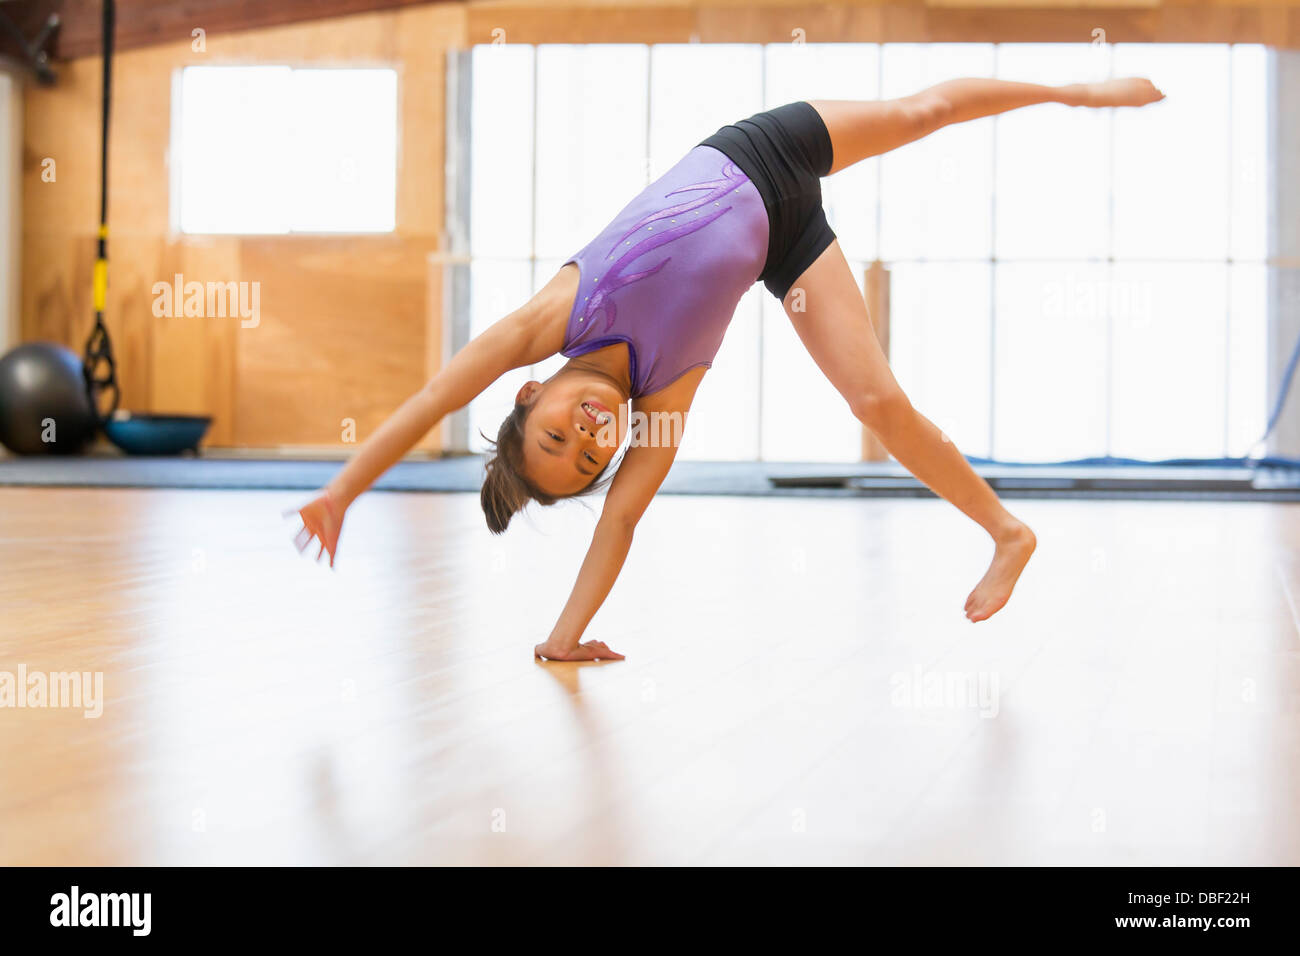 La pratique de la gymnastique chinoise Banque D'Images